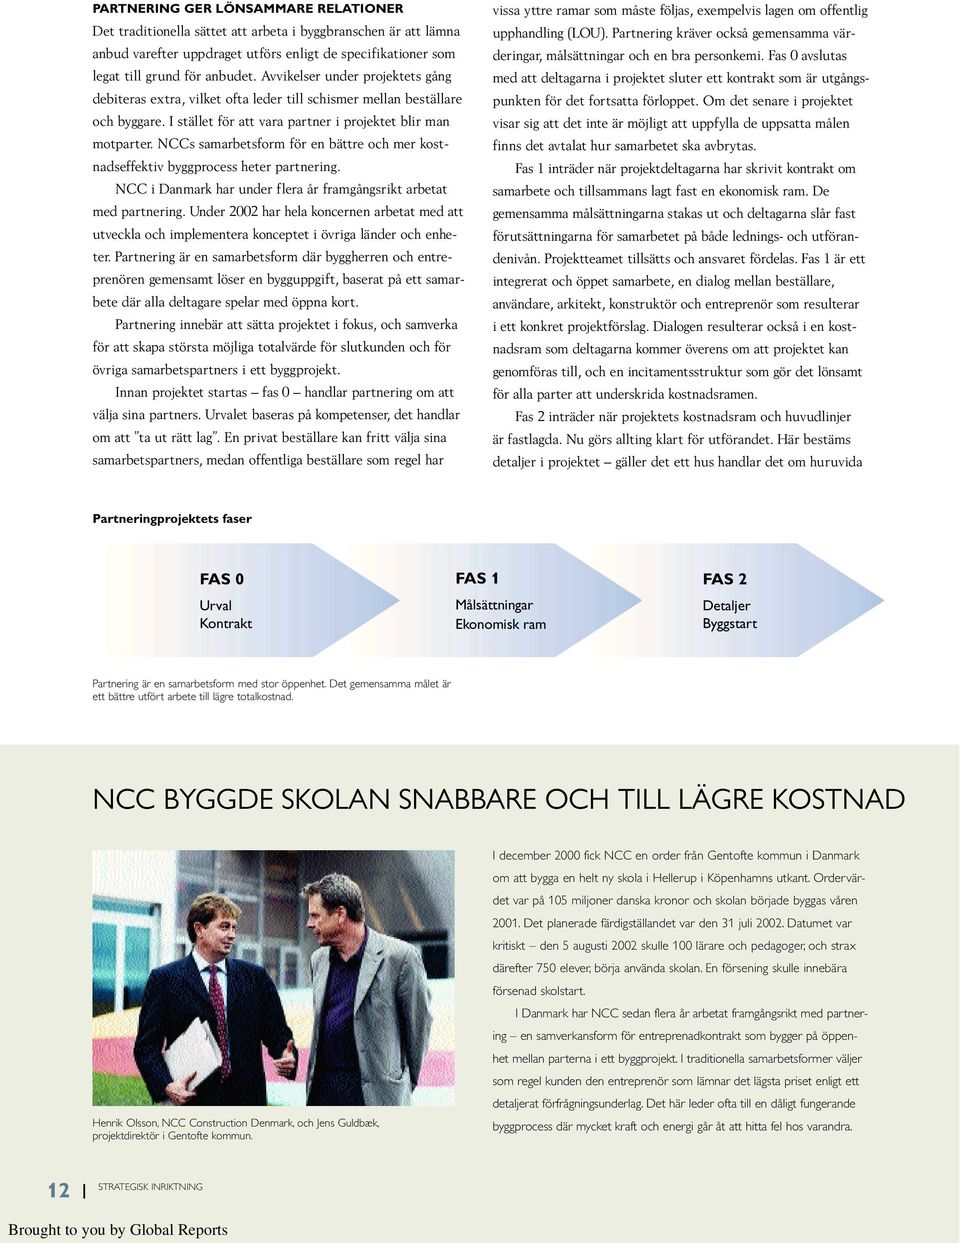 NCCs samarbetsform för en bättre och mer kostnadseffektiv byggprocess heter partnering. NCC i Danmark har under flera år framgångsrikt arbetat med partnering.